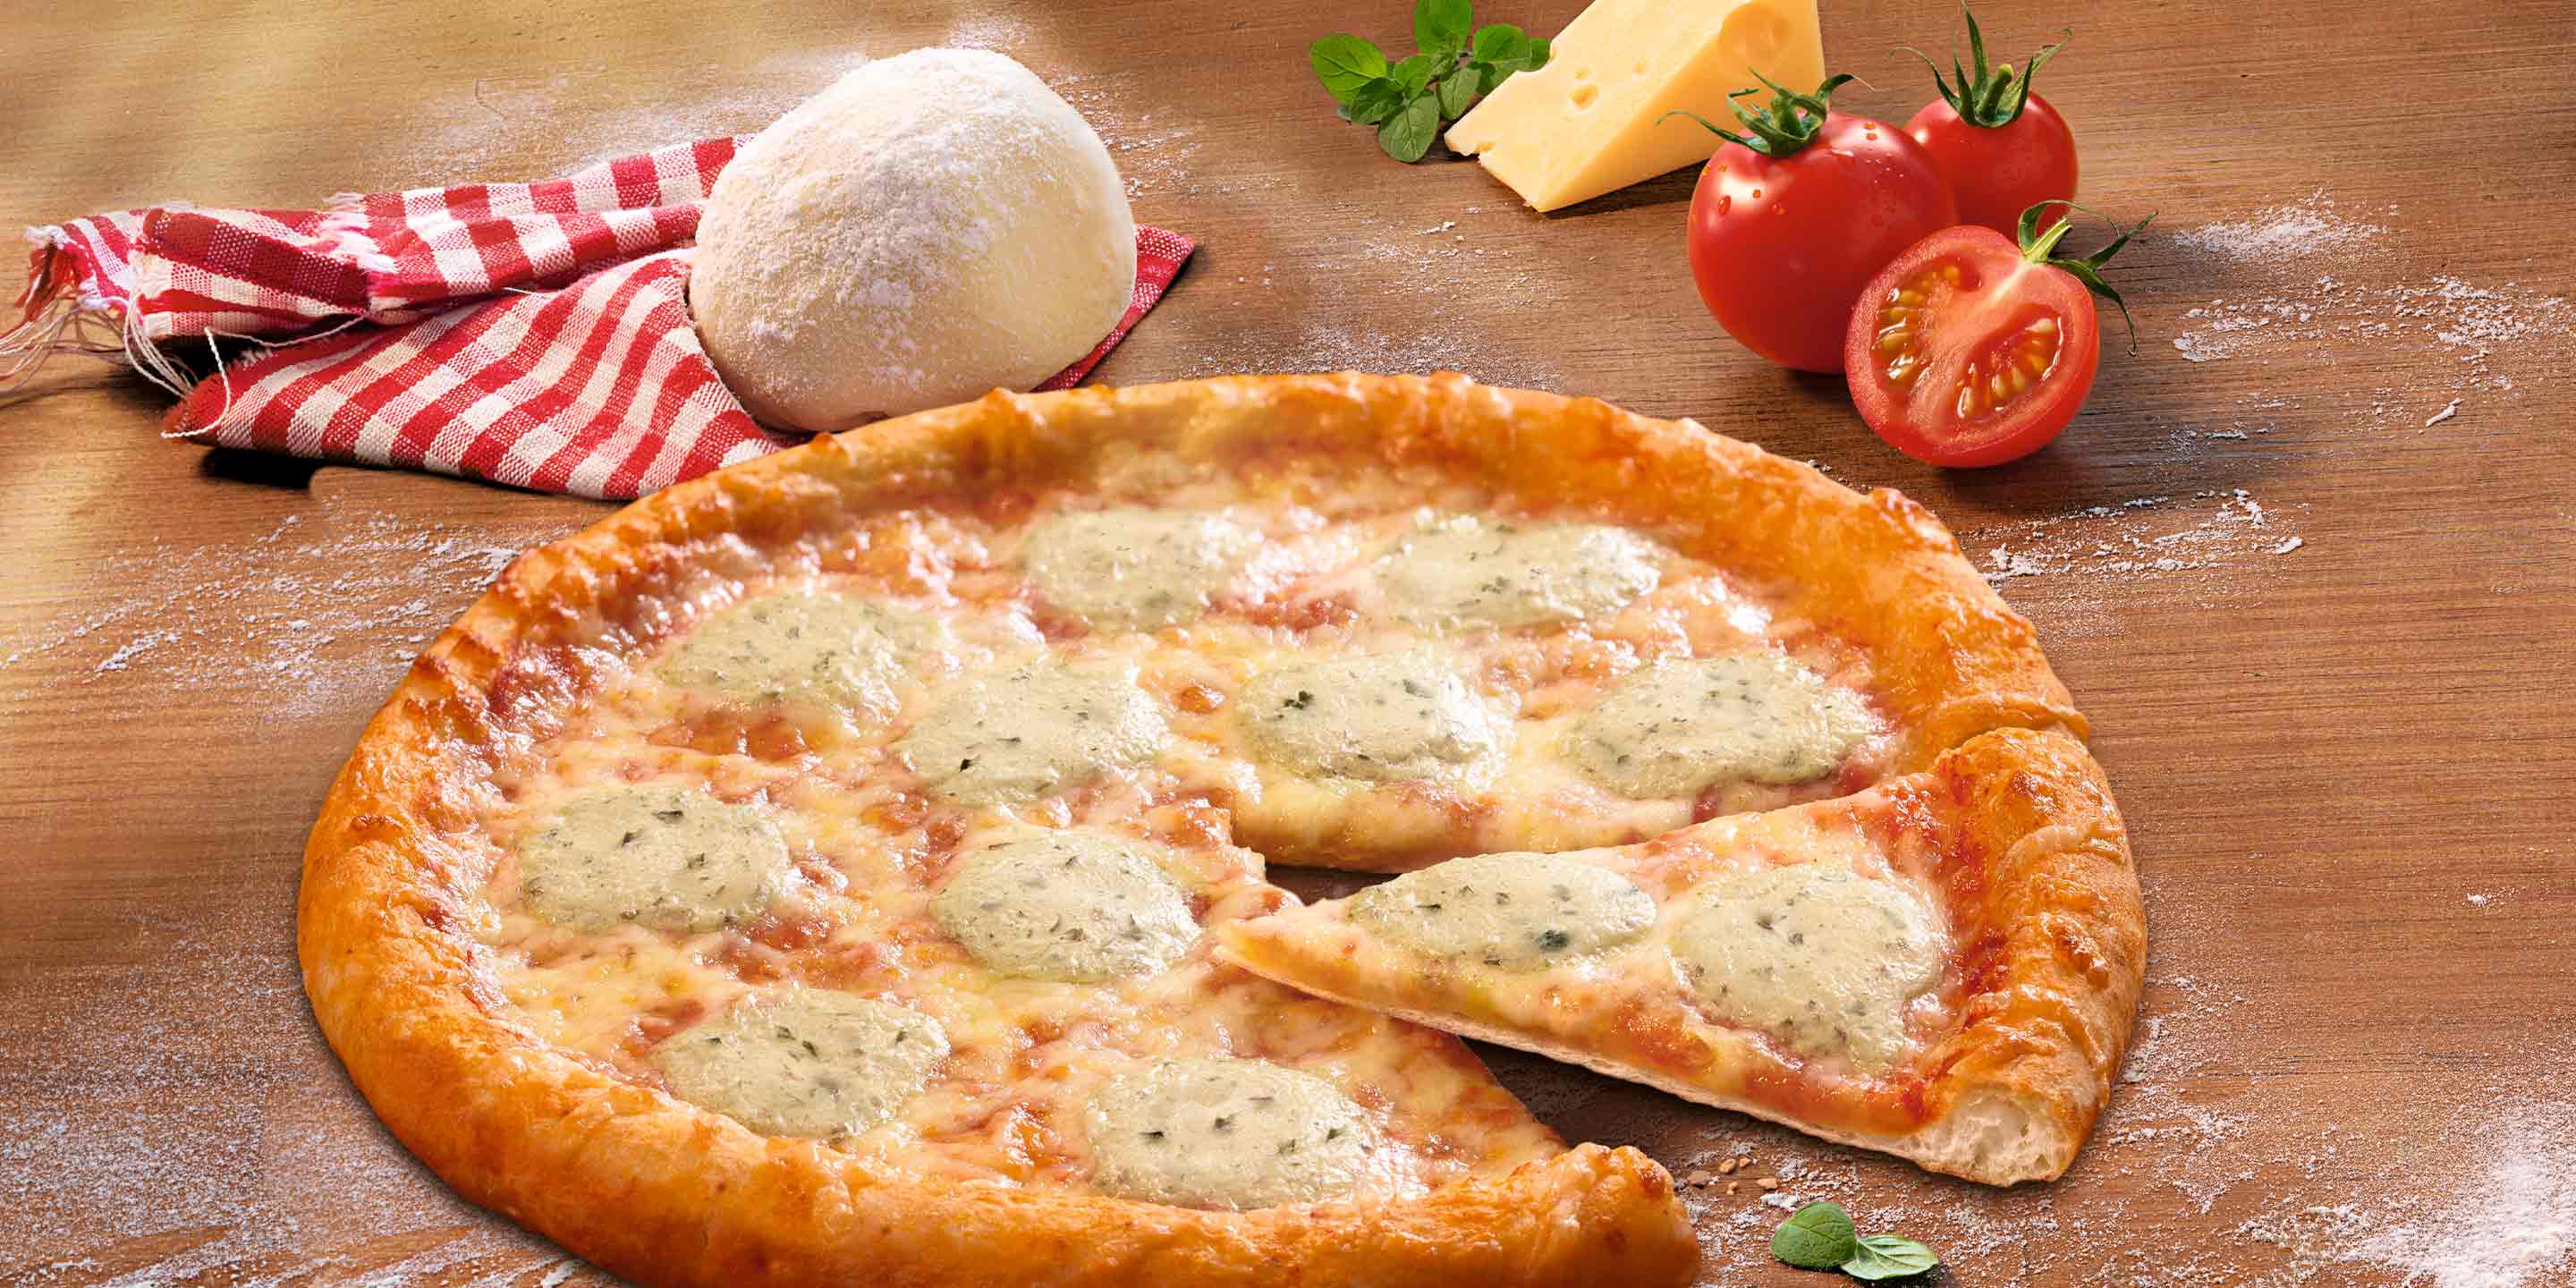 Pizza mozzarella Ristorante Dr. Oetker sin gluten sin lactosa 370 g.